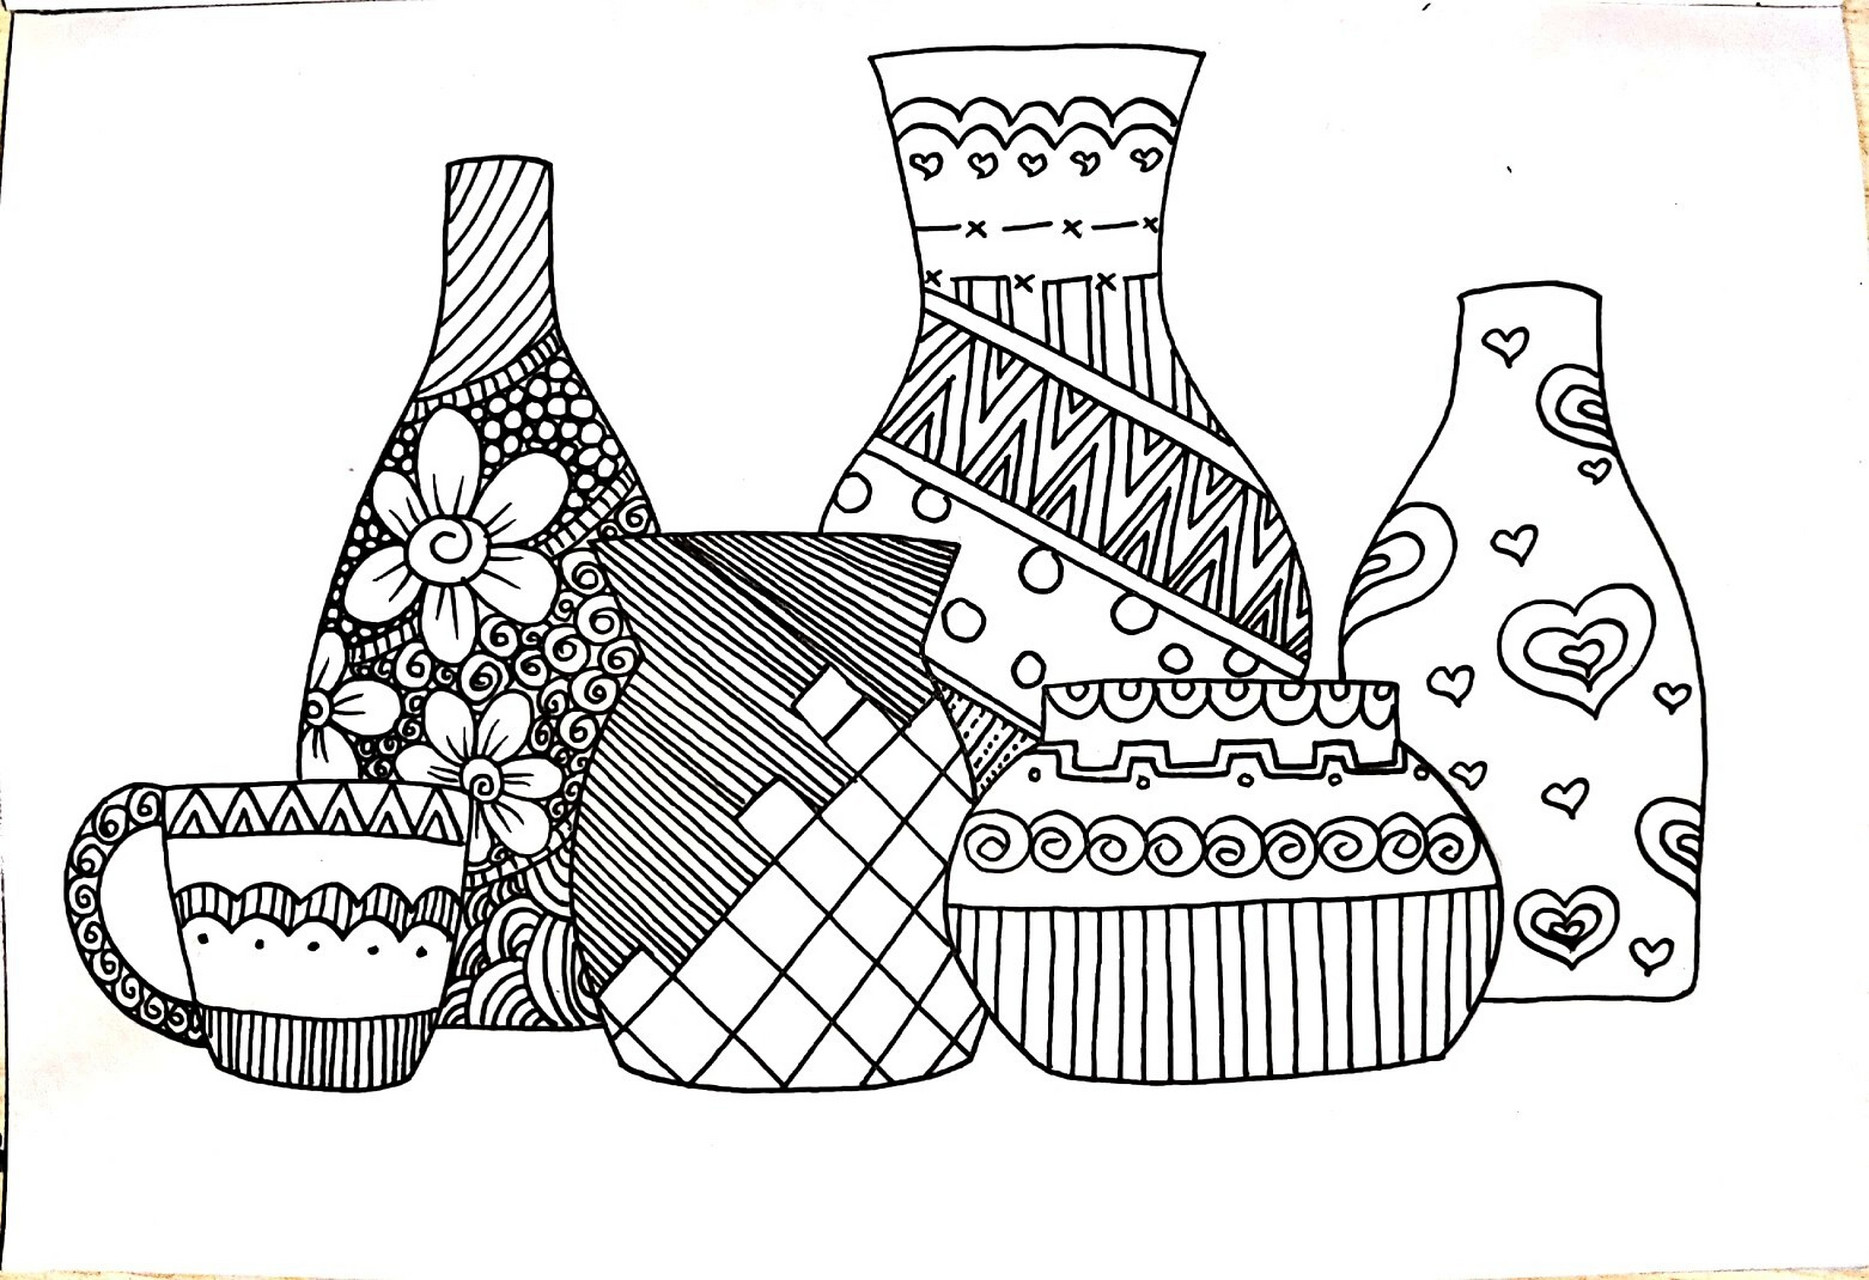 瓶瓶罐罐 创意儿童画 简笔画 线描